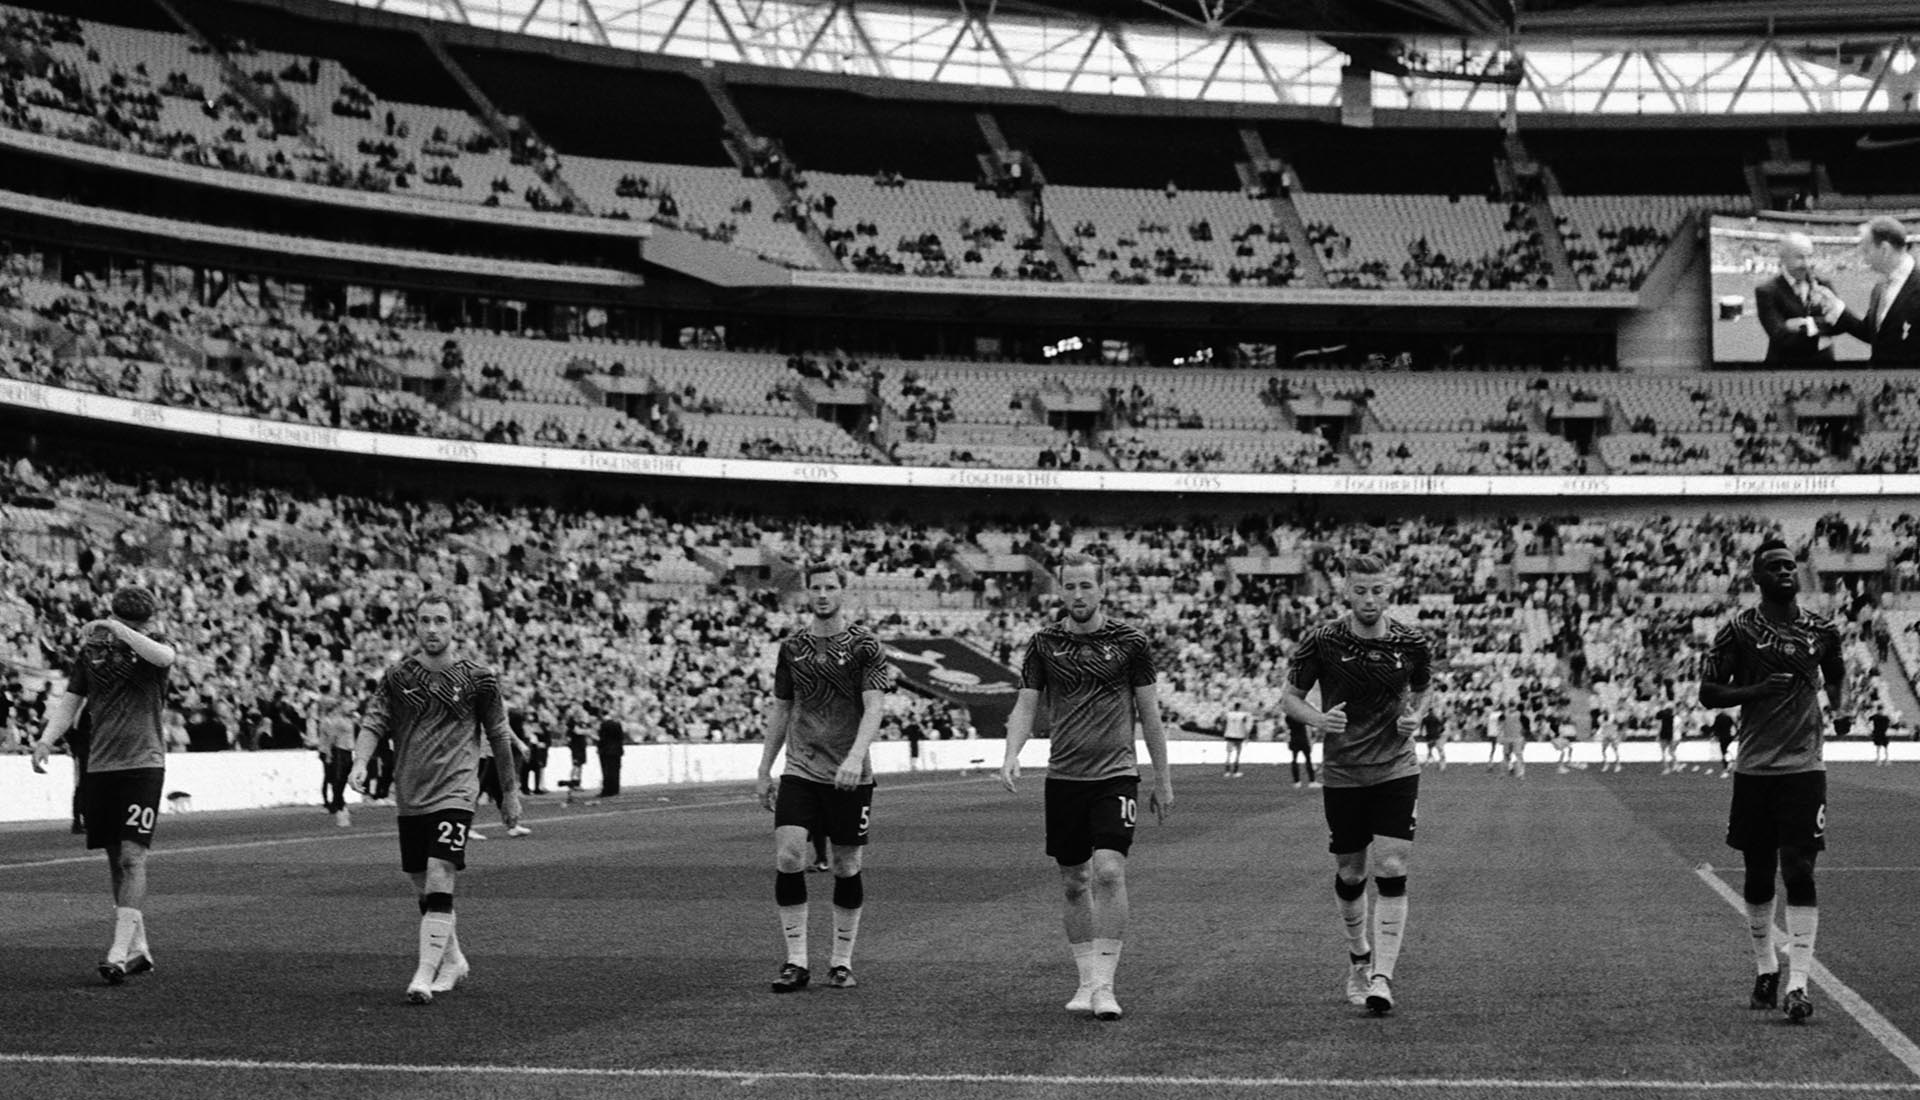 5,720 Fulham V Tottenham Hotspur Premier League Photos & High Res Pictures  - Getty Images